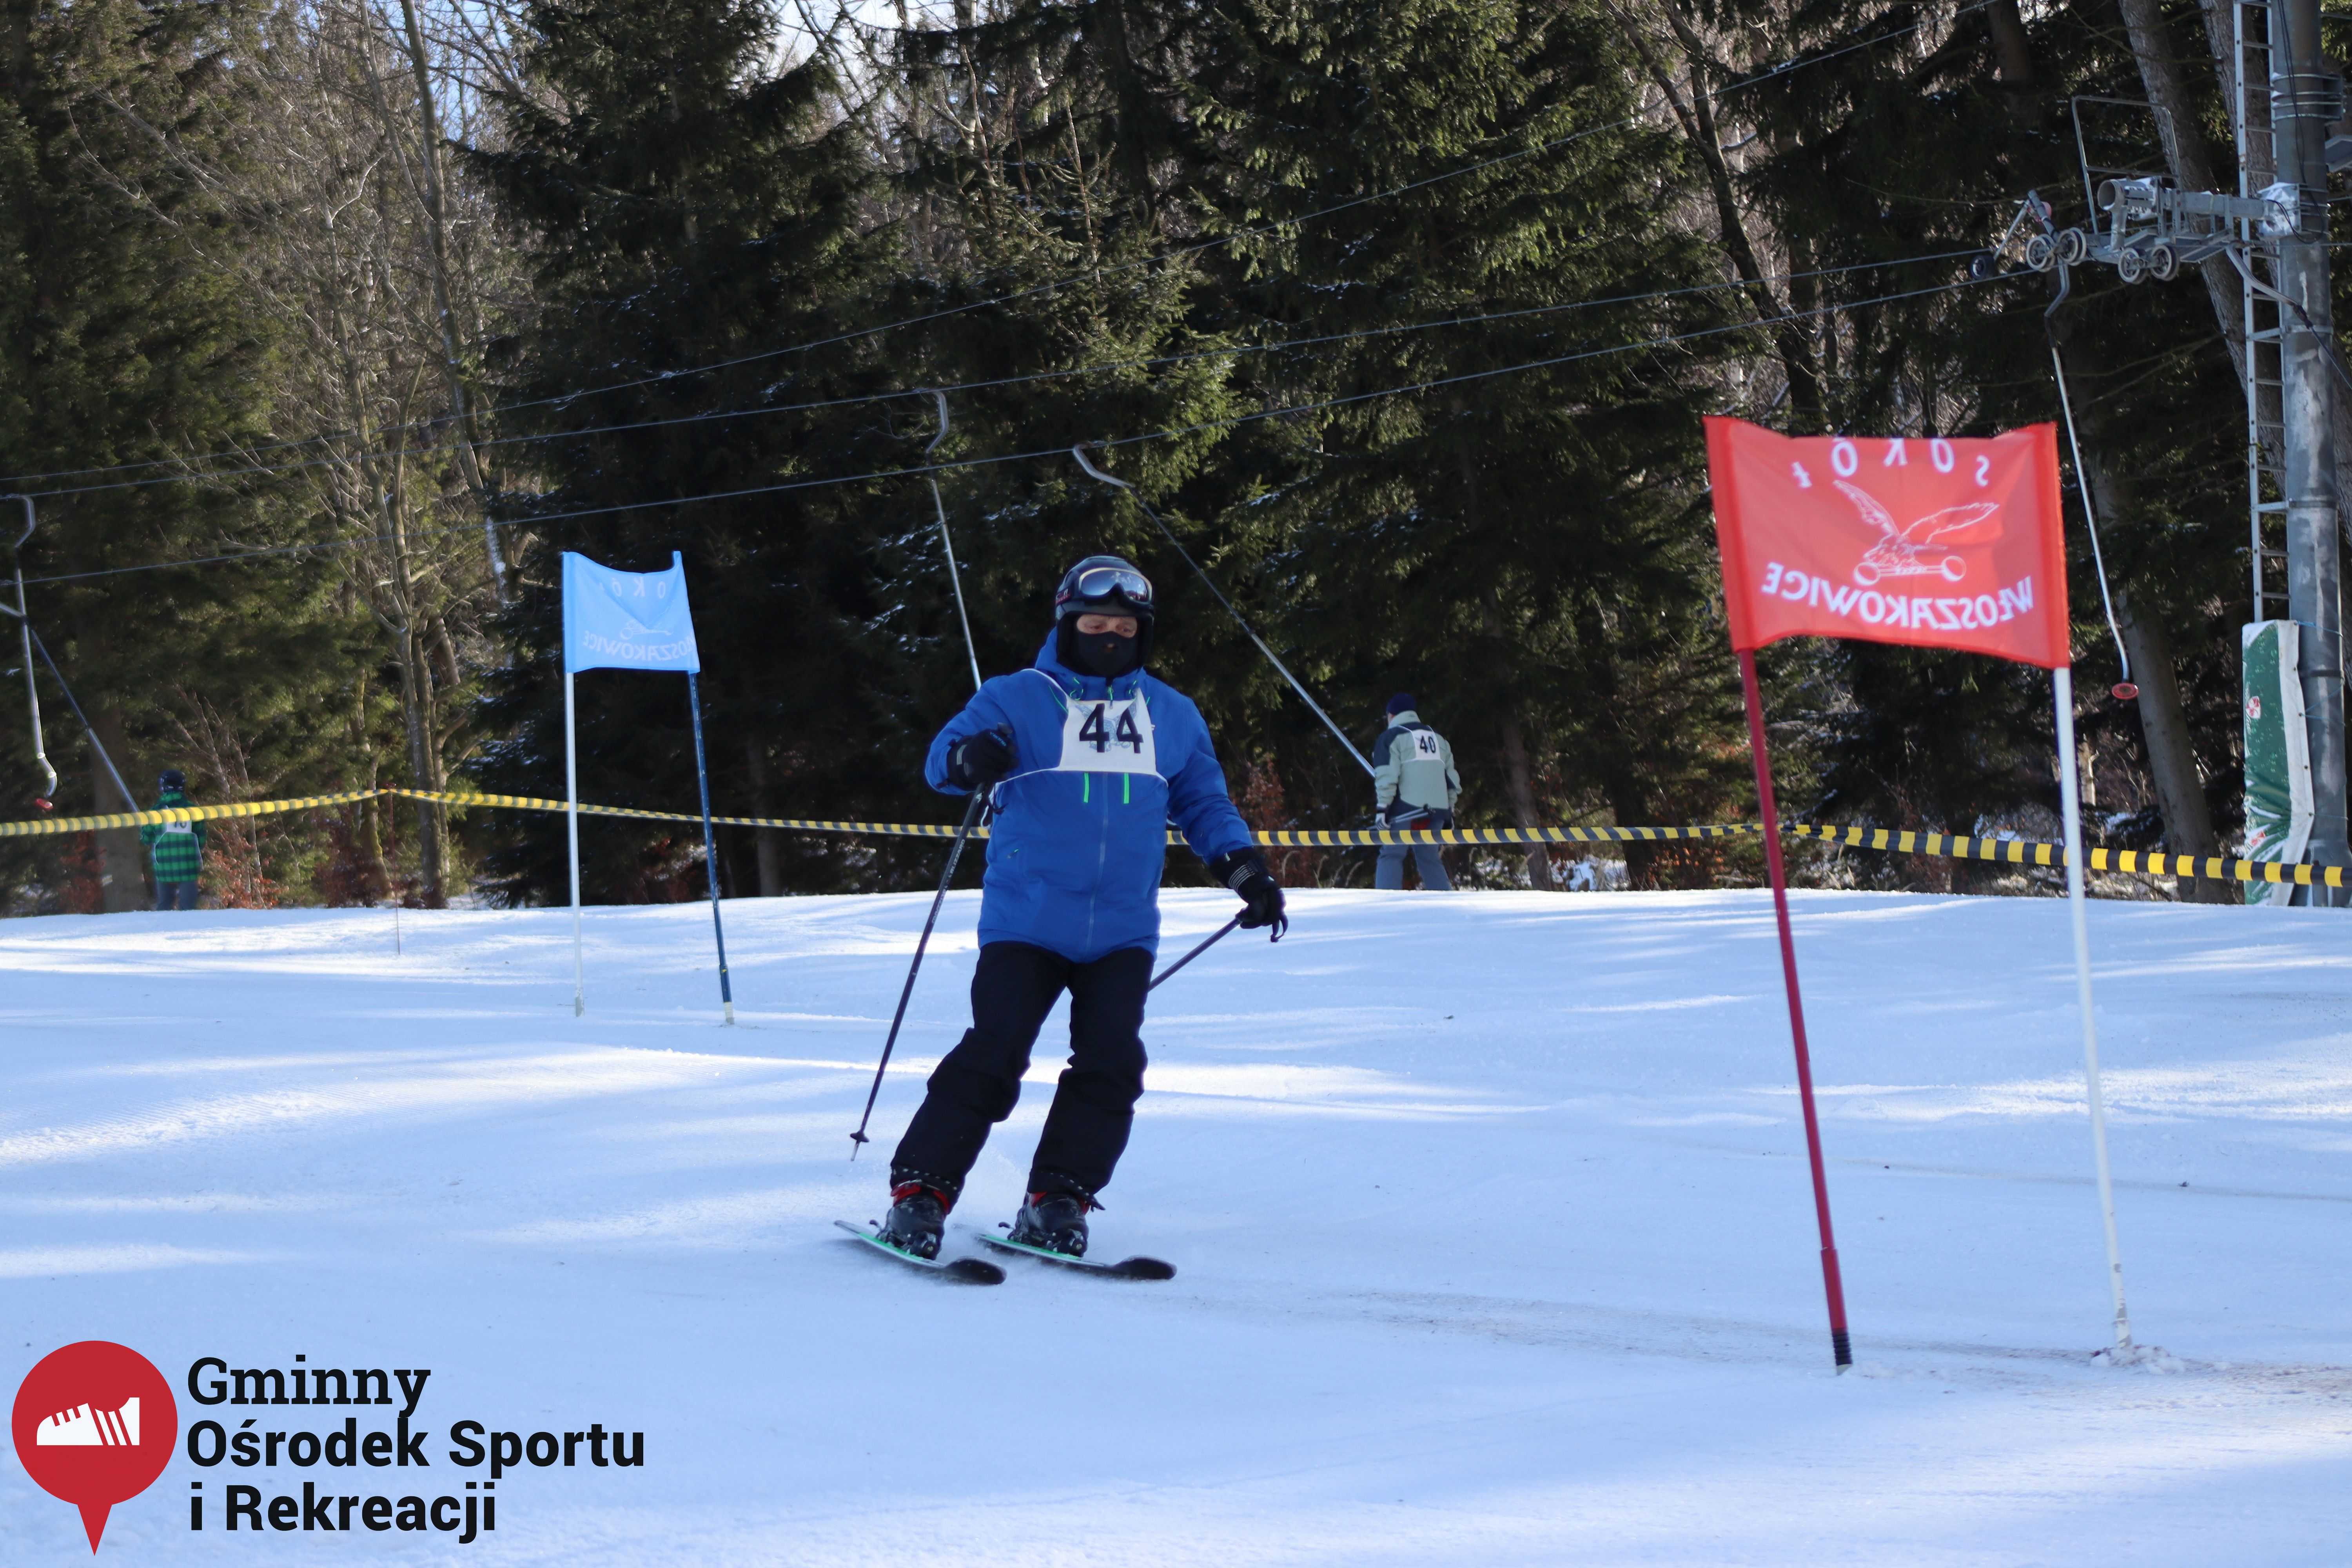 2022.02.12 - 18. Mistrzostwa Gminy Woszakowice w narciarstwie043.jpg - 2,26 MB